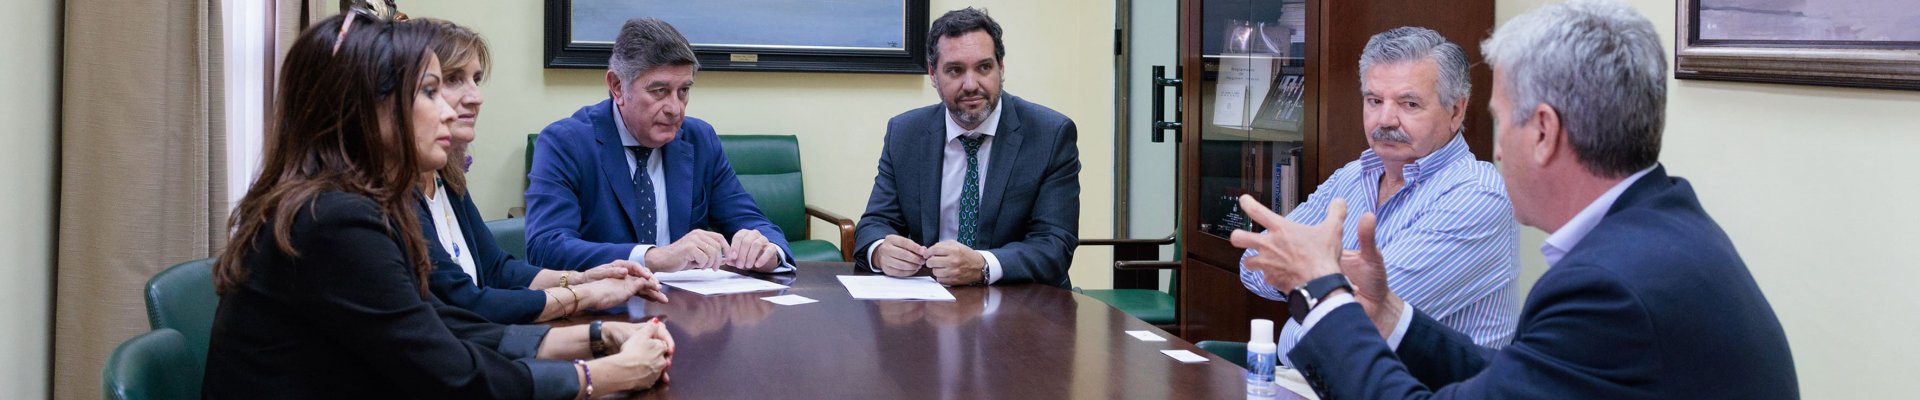 Fraternidad-Muprespa y el Real e Ilustre Colegio de Farmacéuticos de Sevilla, RICOFSE, firman un convenio de colaboración